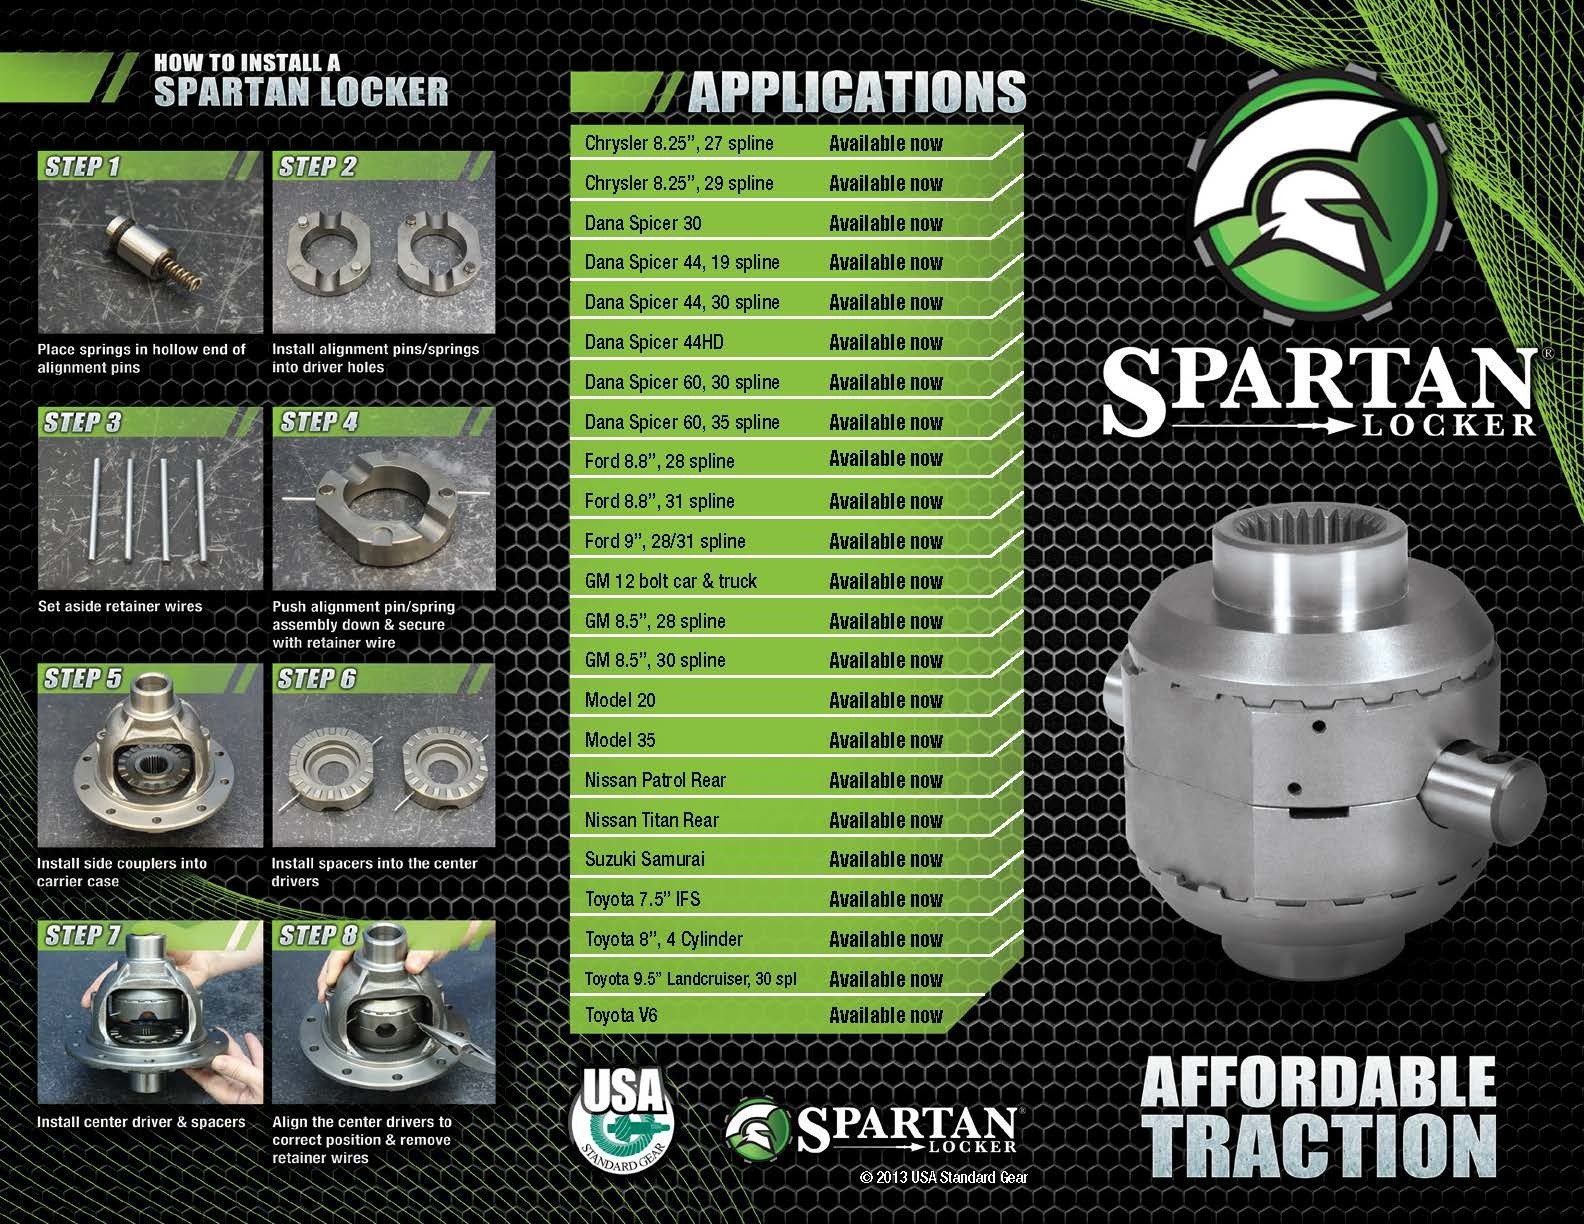 Spartan Locker for Dana 44HD, 30 spline axles, with heavy-duty cross pin shaft